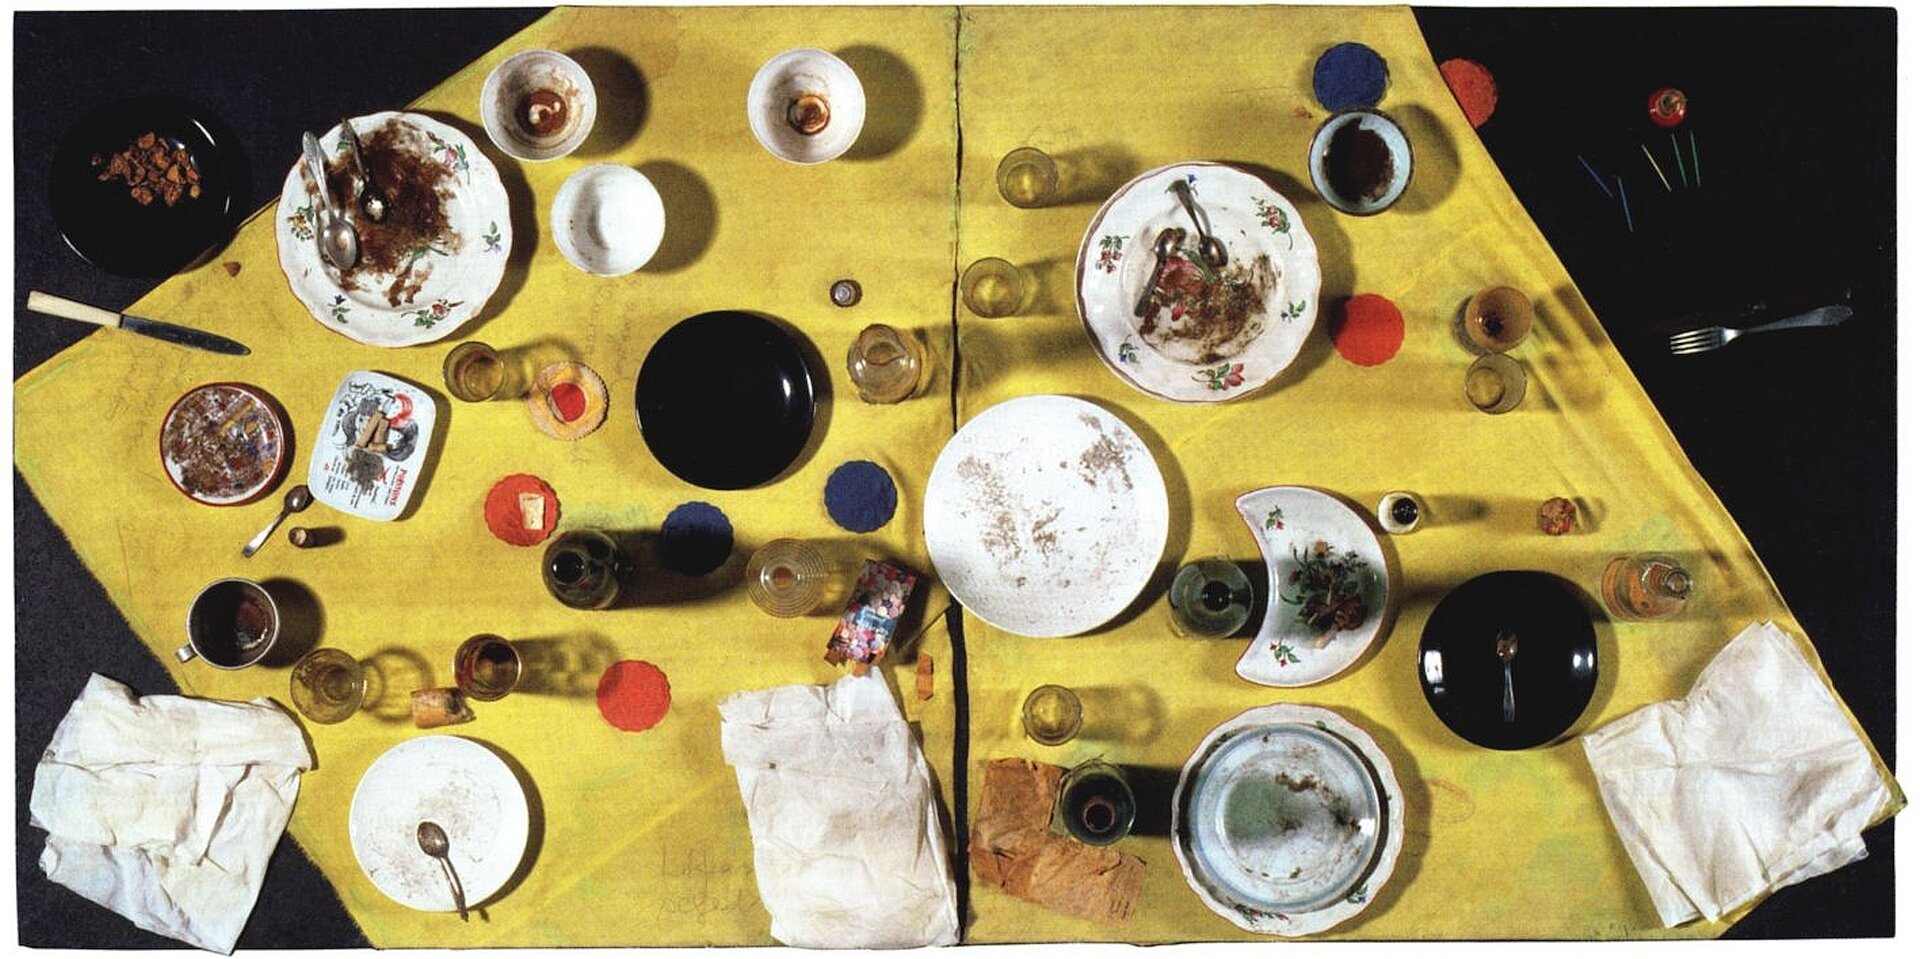 Ilustracja o kształcie poziomego prostokąta pracę  Daniela Spoerriego „Węgierski posiłek”. Ukazuje fotografię wykonaną z góry, przedstawiającą stół nakryty czarnym  obrusem i żółtą serwetą, na której ustawione są brudne naczynia. W szklanych kubkach, butelkach, szklankach i kieliszkach znajdują się resztki płynów, a na talerzykach resztki jedzenia. Widoczne są również zużyte, brudne serwetki. Wszystkie przedmioty rozstawione zostały niedbale. 